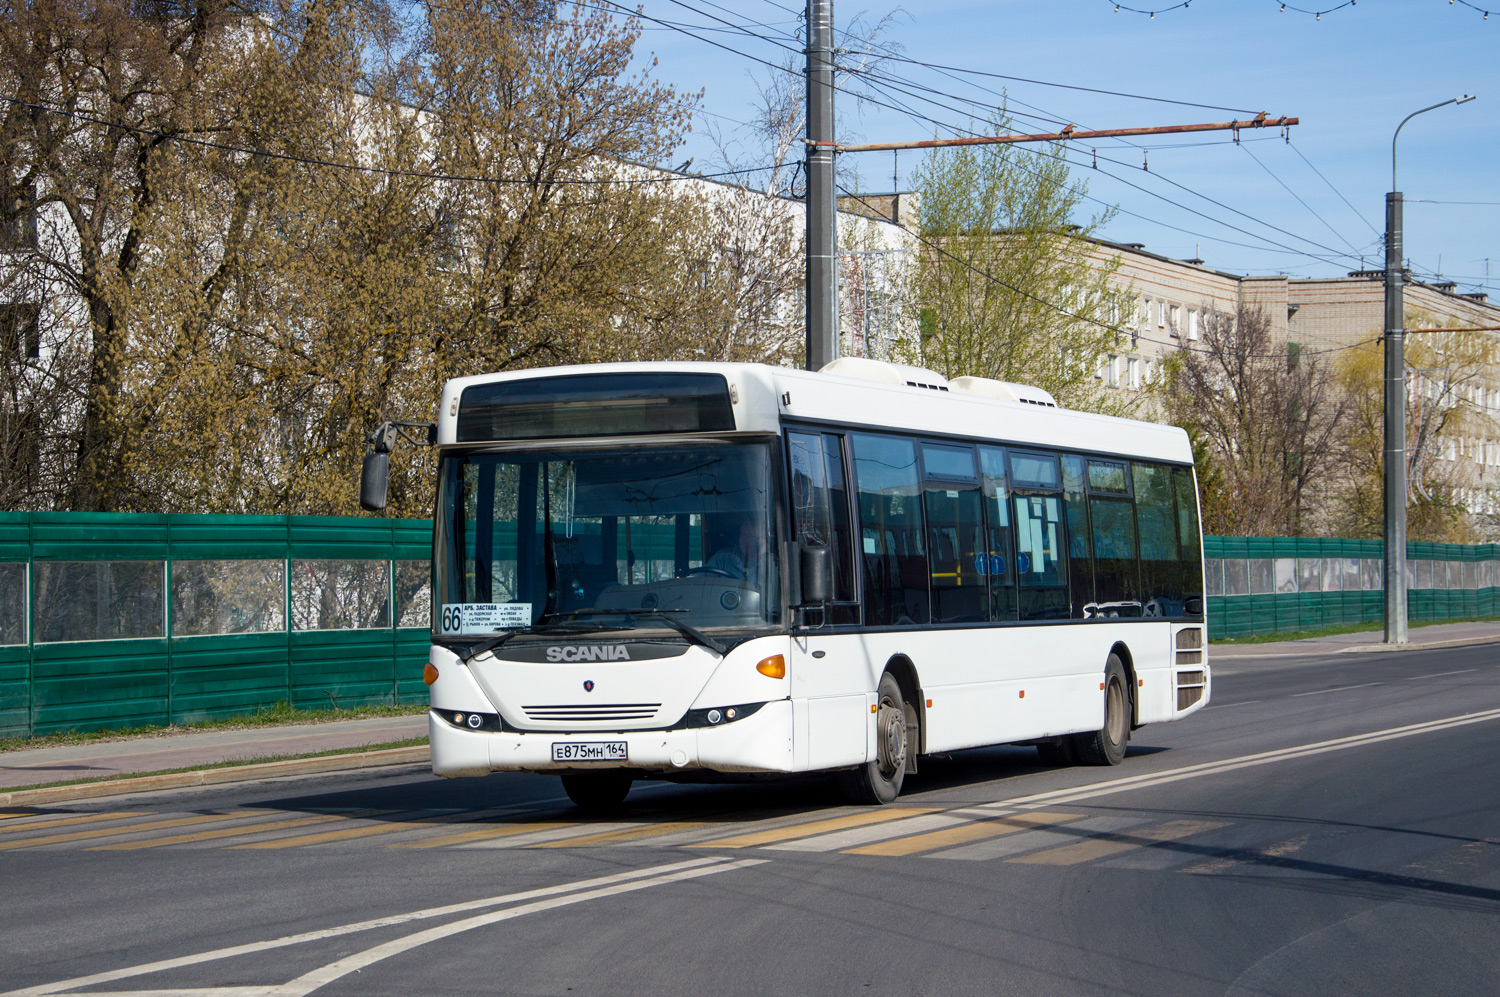 Пензенская область, Scania OmniLink II (Скания-Питер) № Е 875 МН 164